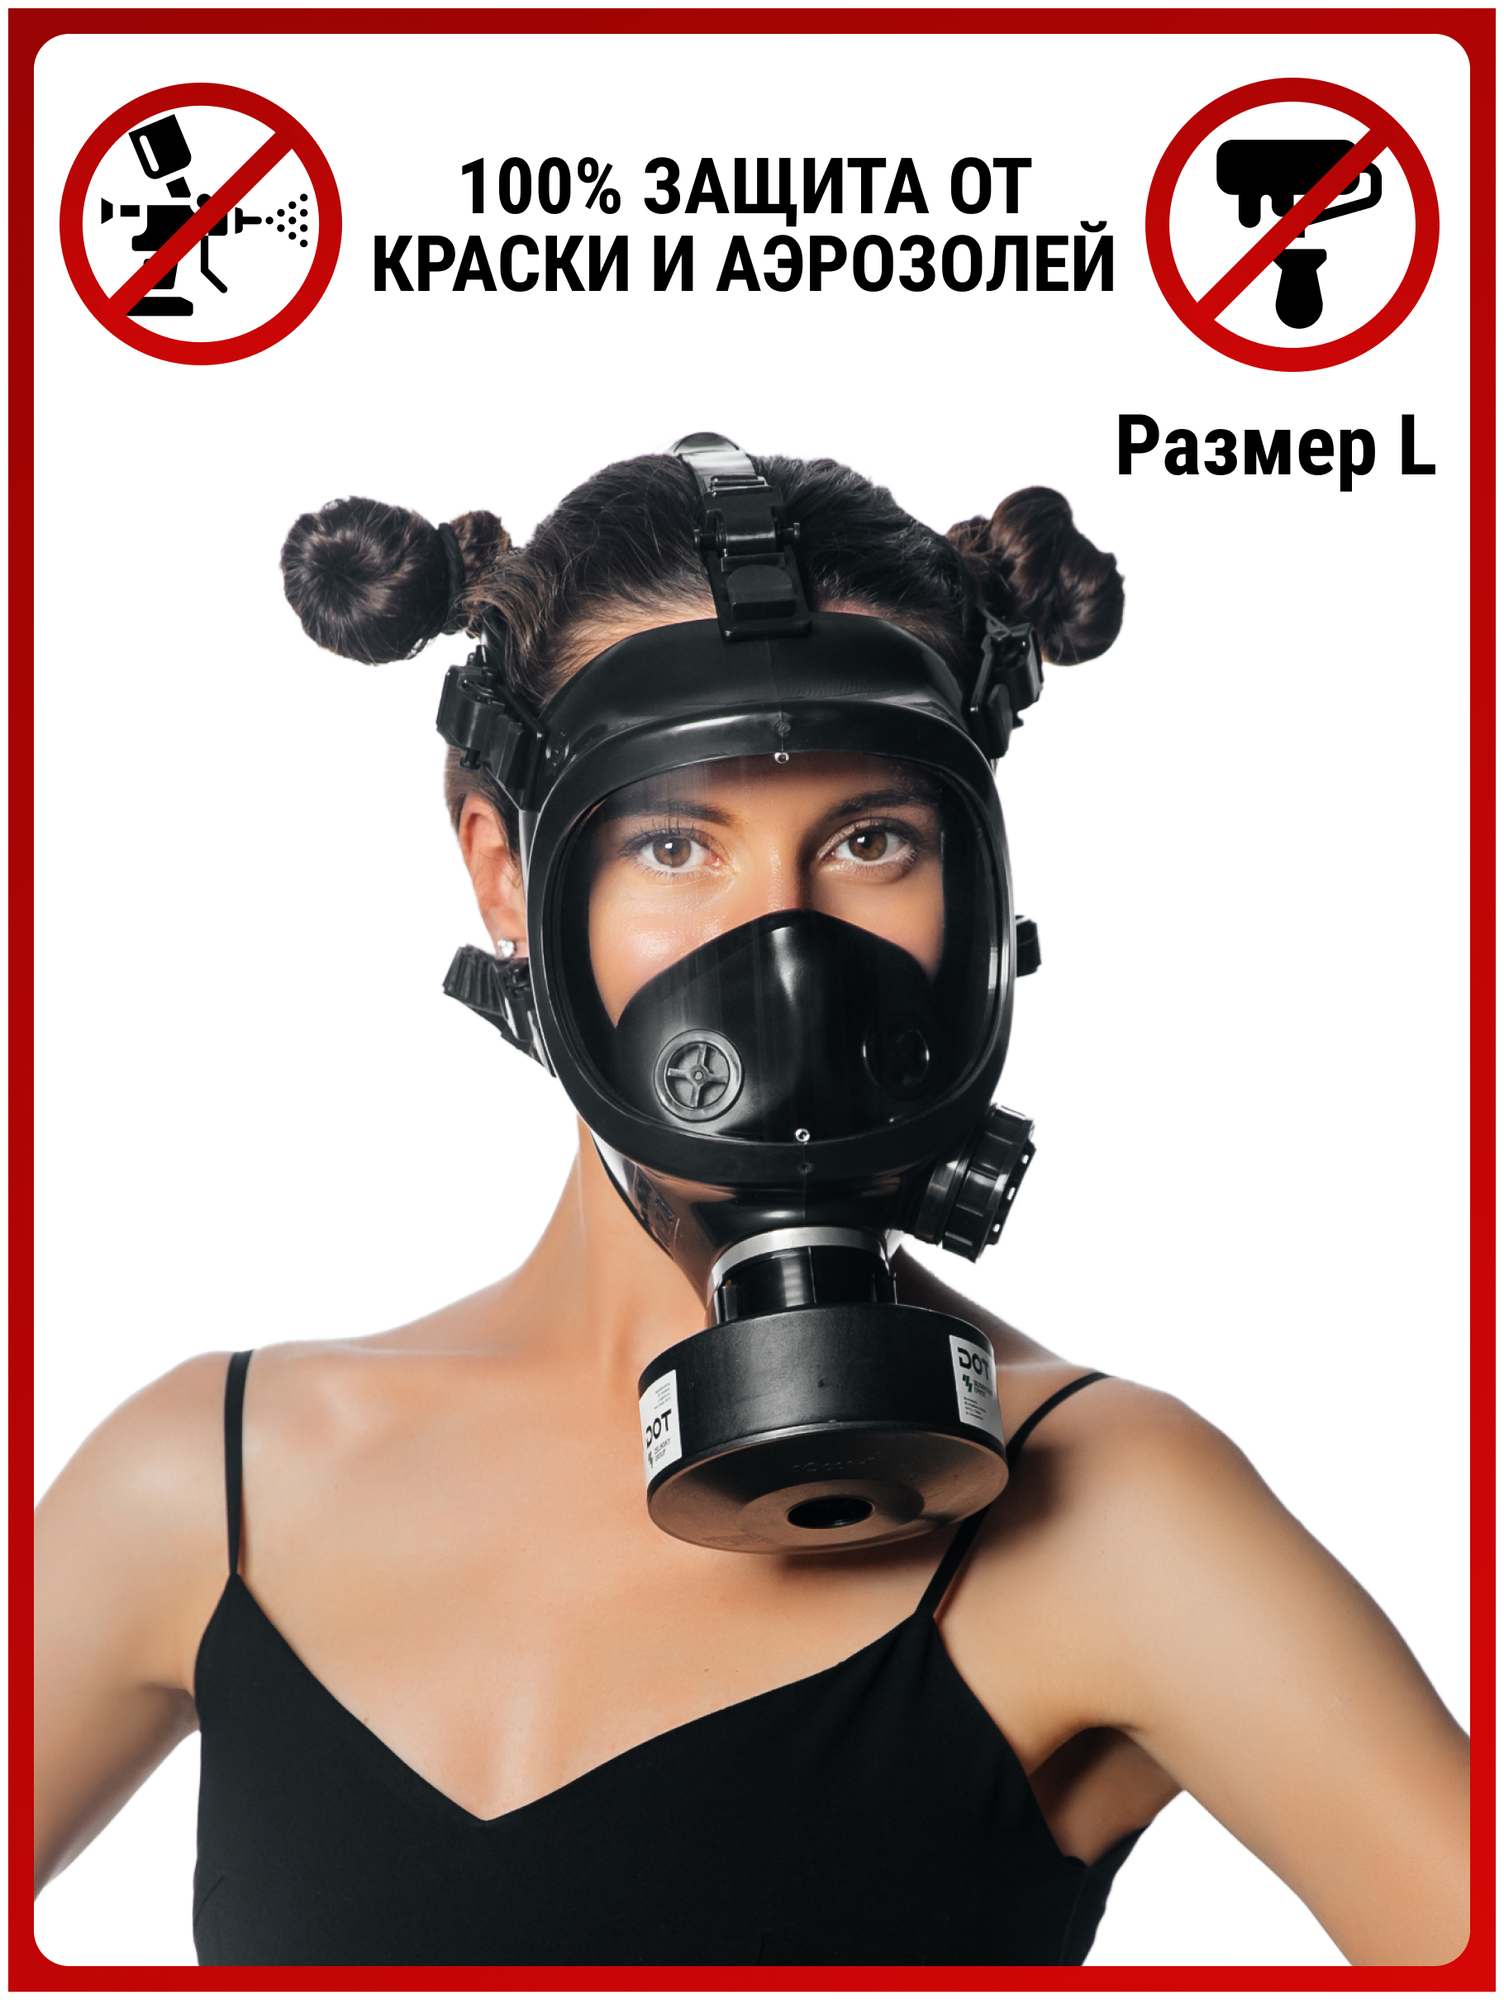 Профессиональный респиратор ffp3 противогаз Бриз 4301М маска защитная с угольным фильтром A1P3 распиратор от краски пыли аллергии вирусов MARTEX р. L - фотография № 6